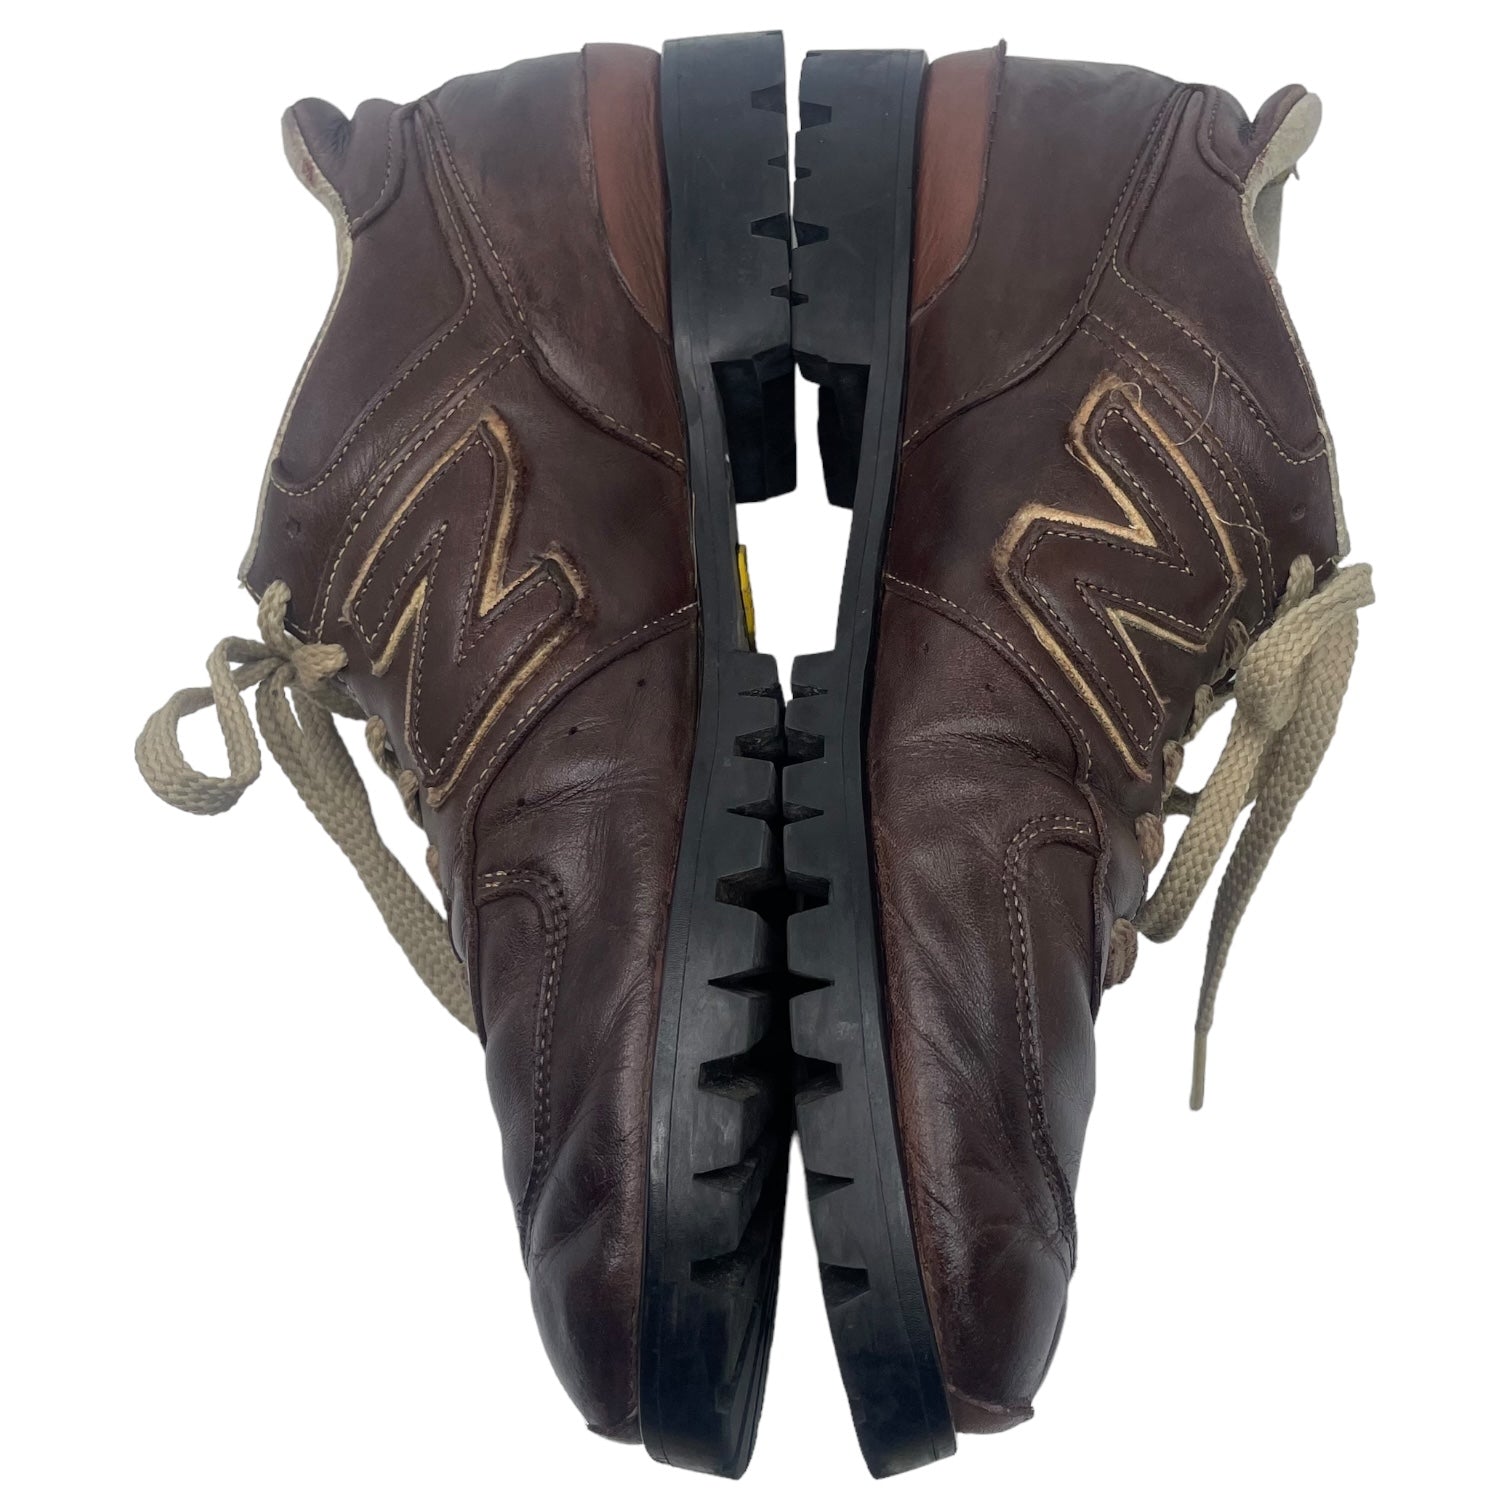 NEW BALANCE(ニューバランス) boots custom leather sneakers 「576 UK MADE」 ブーツカスタム レザースニーカー LM576NB SIZE 27.5 ブラウン リミテッドエディション個人カスタム オールソールカスタムメイド品 一点物